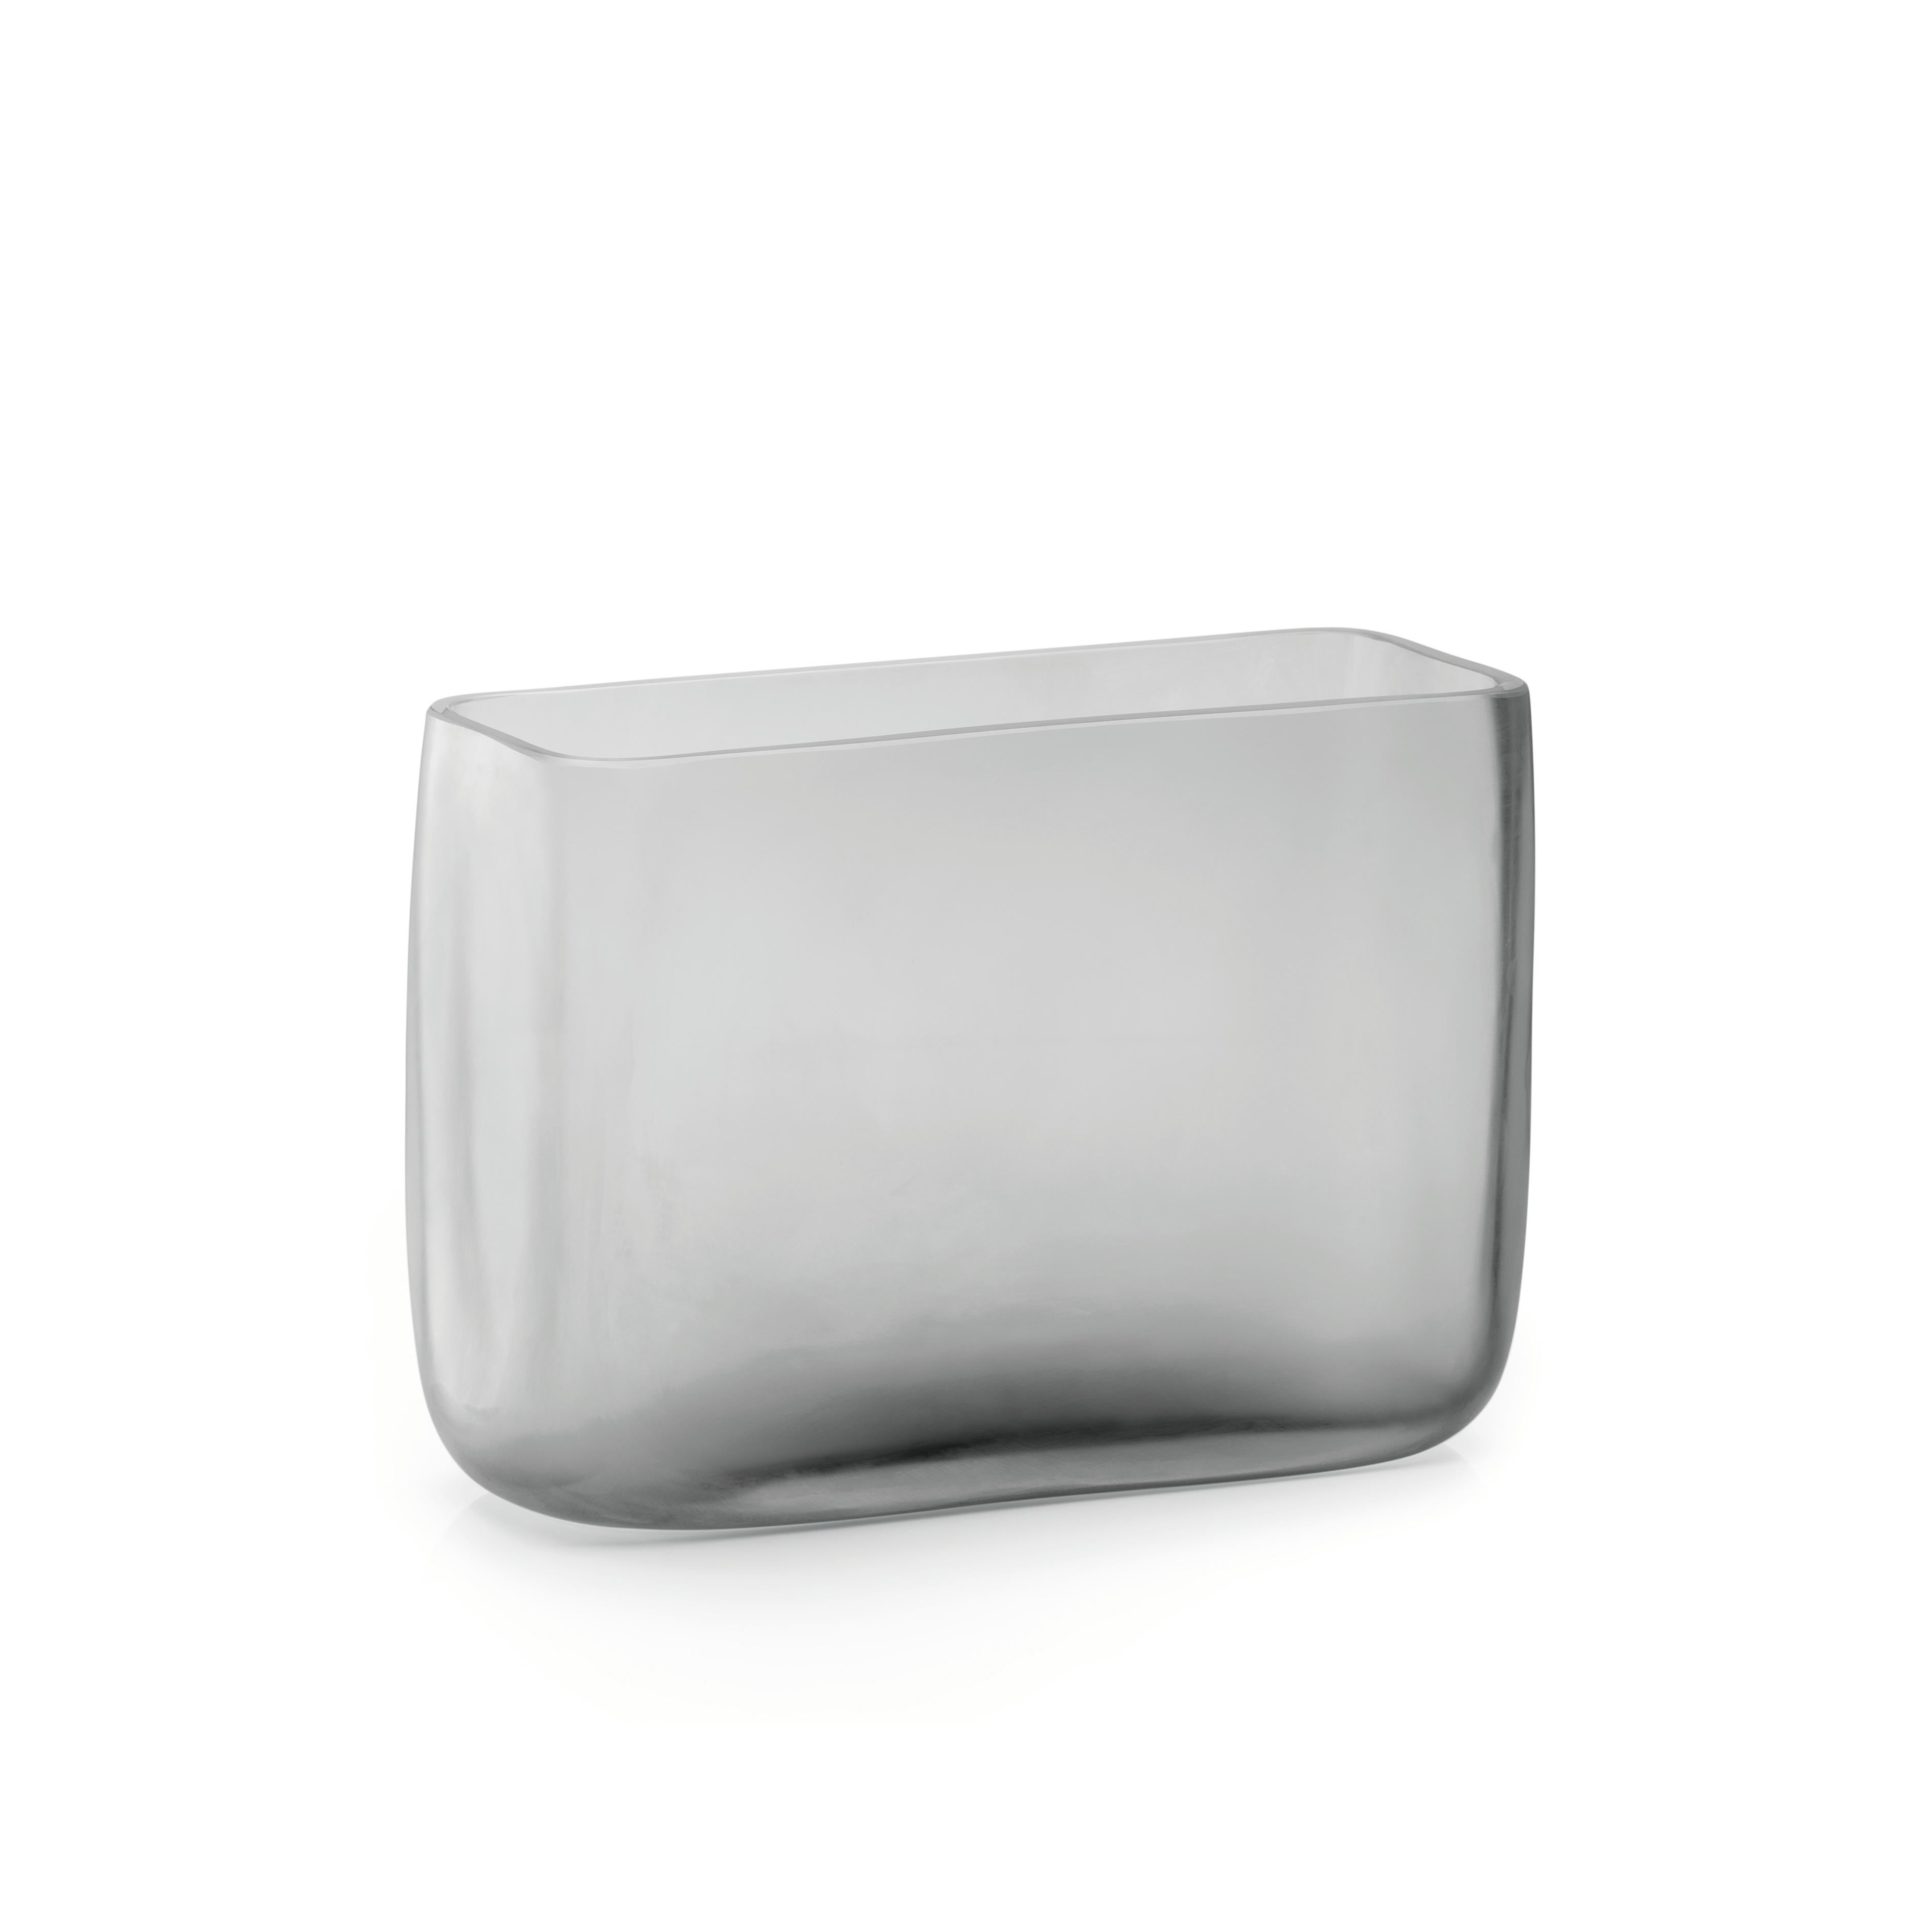 Cube Case by Purho
Dimensions : D35 x L12 x H25 cm
Matériaux : Verre
Autres couleurs disponibles.

Purho est un nouveau protagoniste du design made in Italy, un travail de synthèse, une recherche qui dure depuis des années, une âme italienne et un